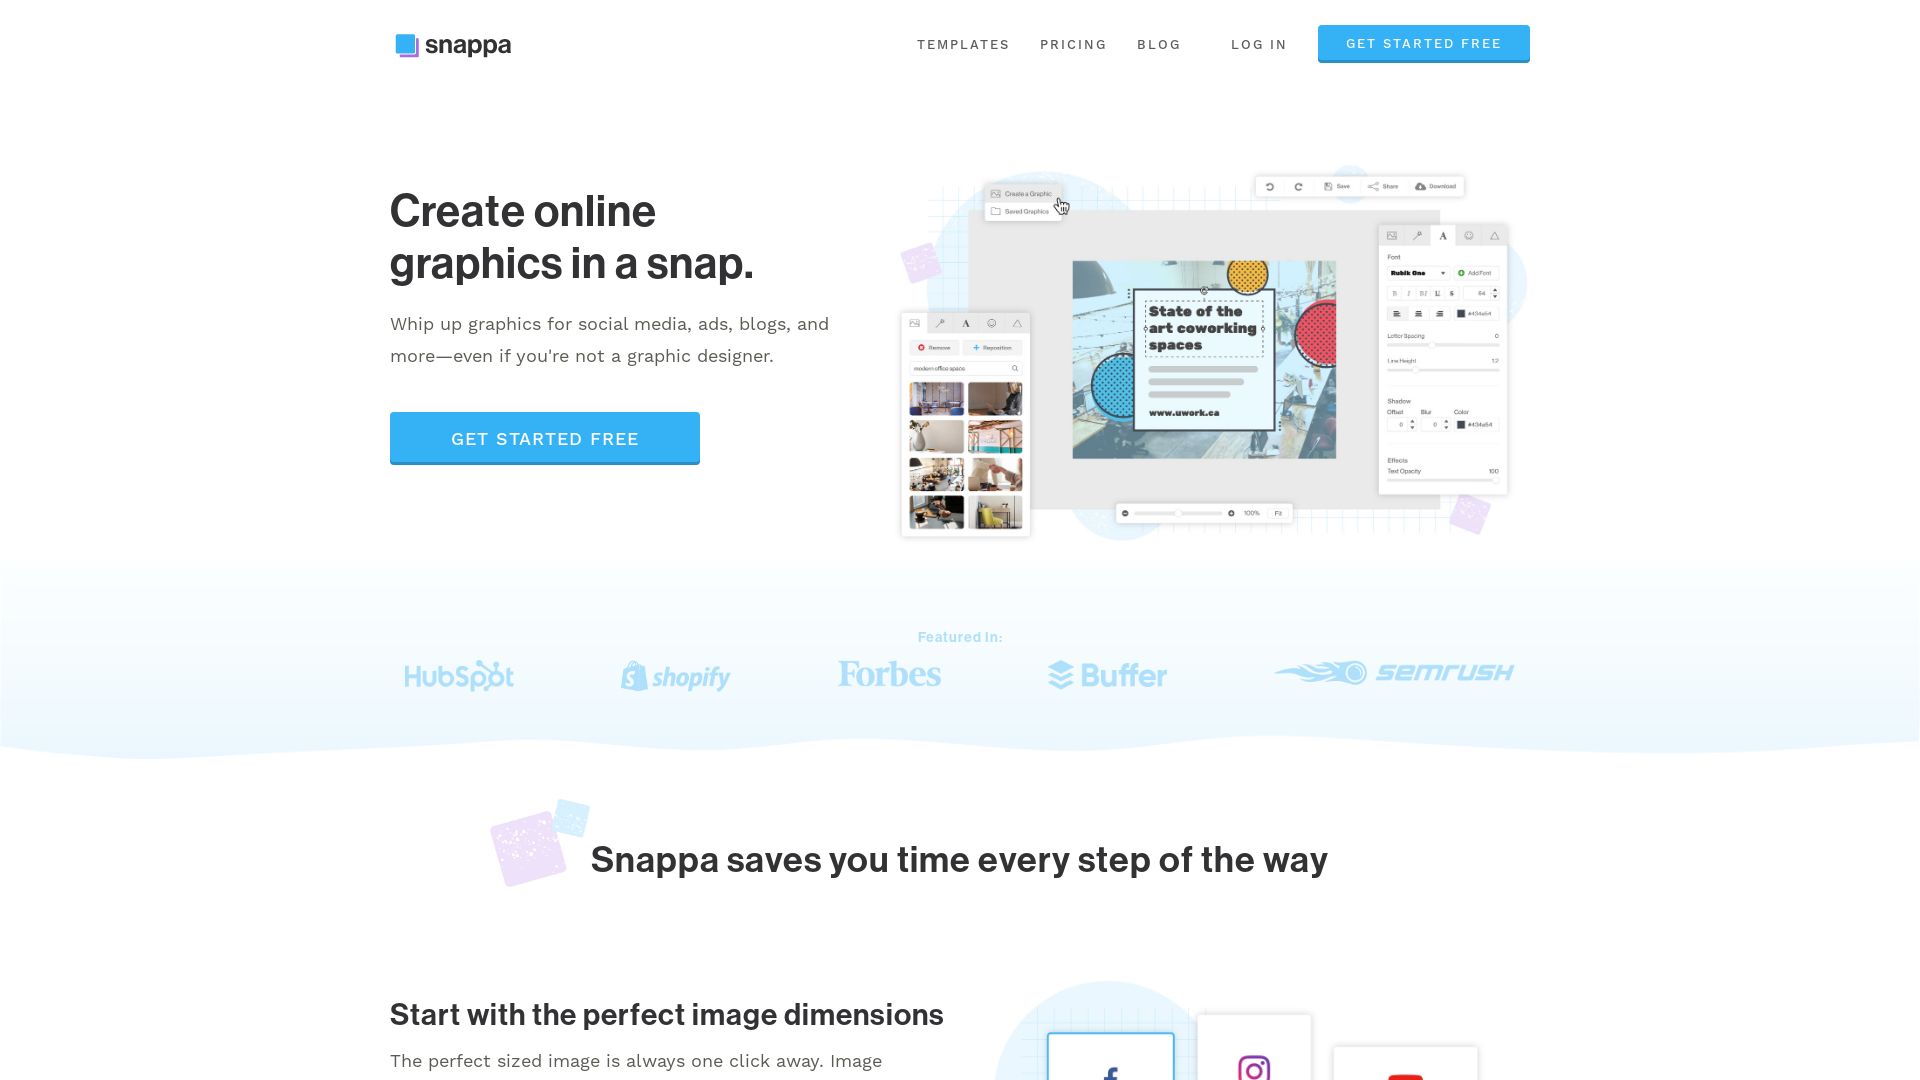 Website status snappa.com is   ONLINE